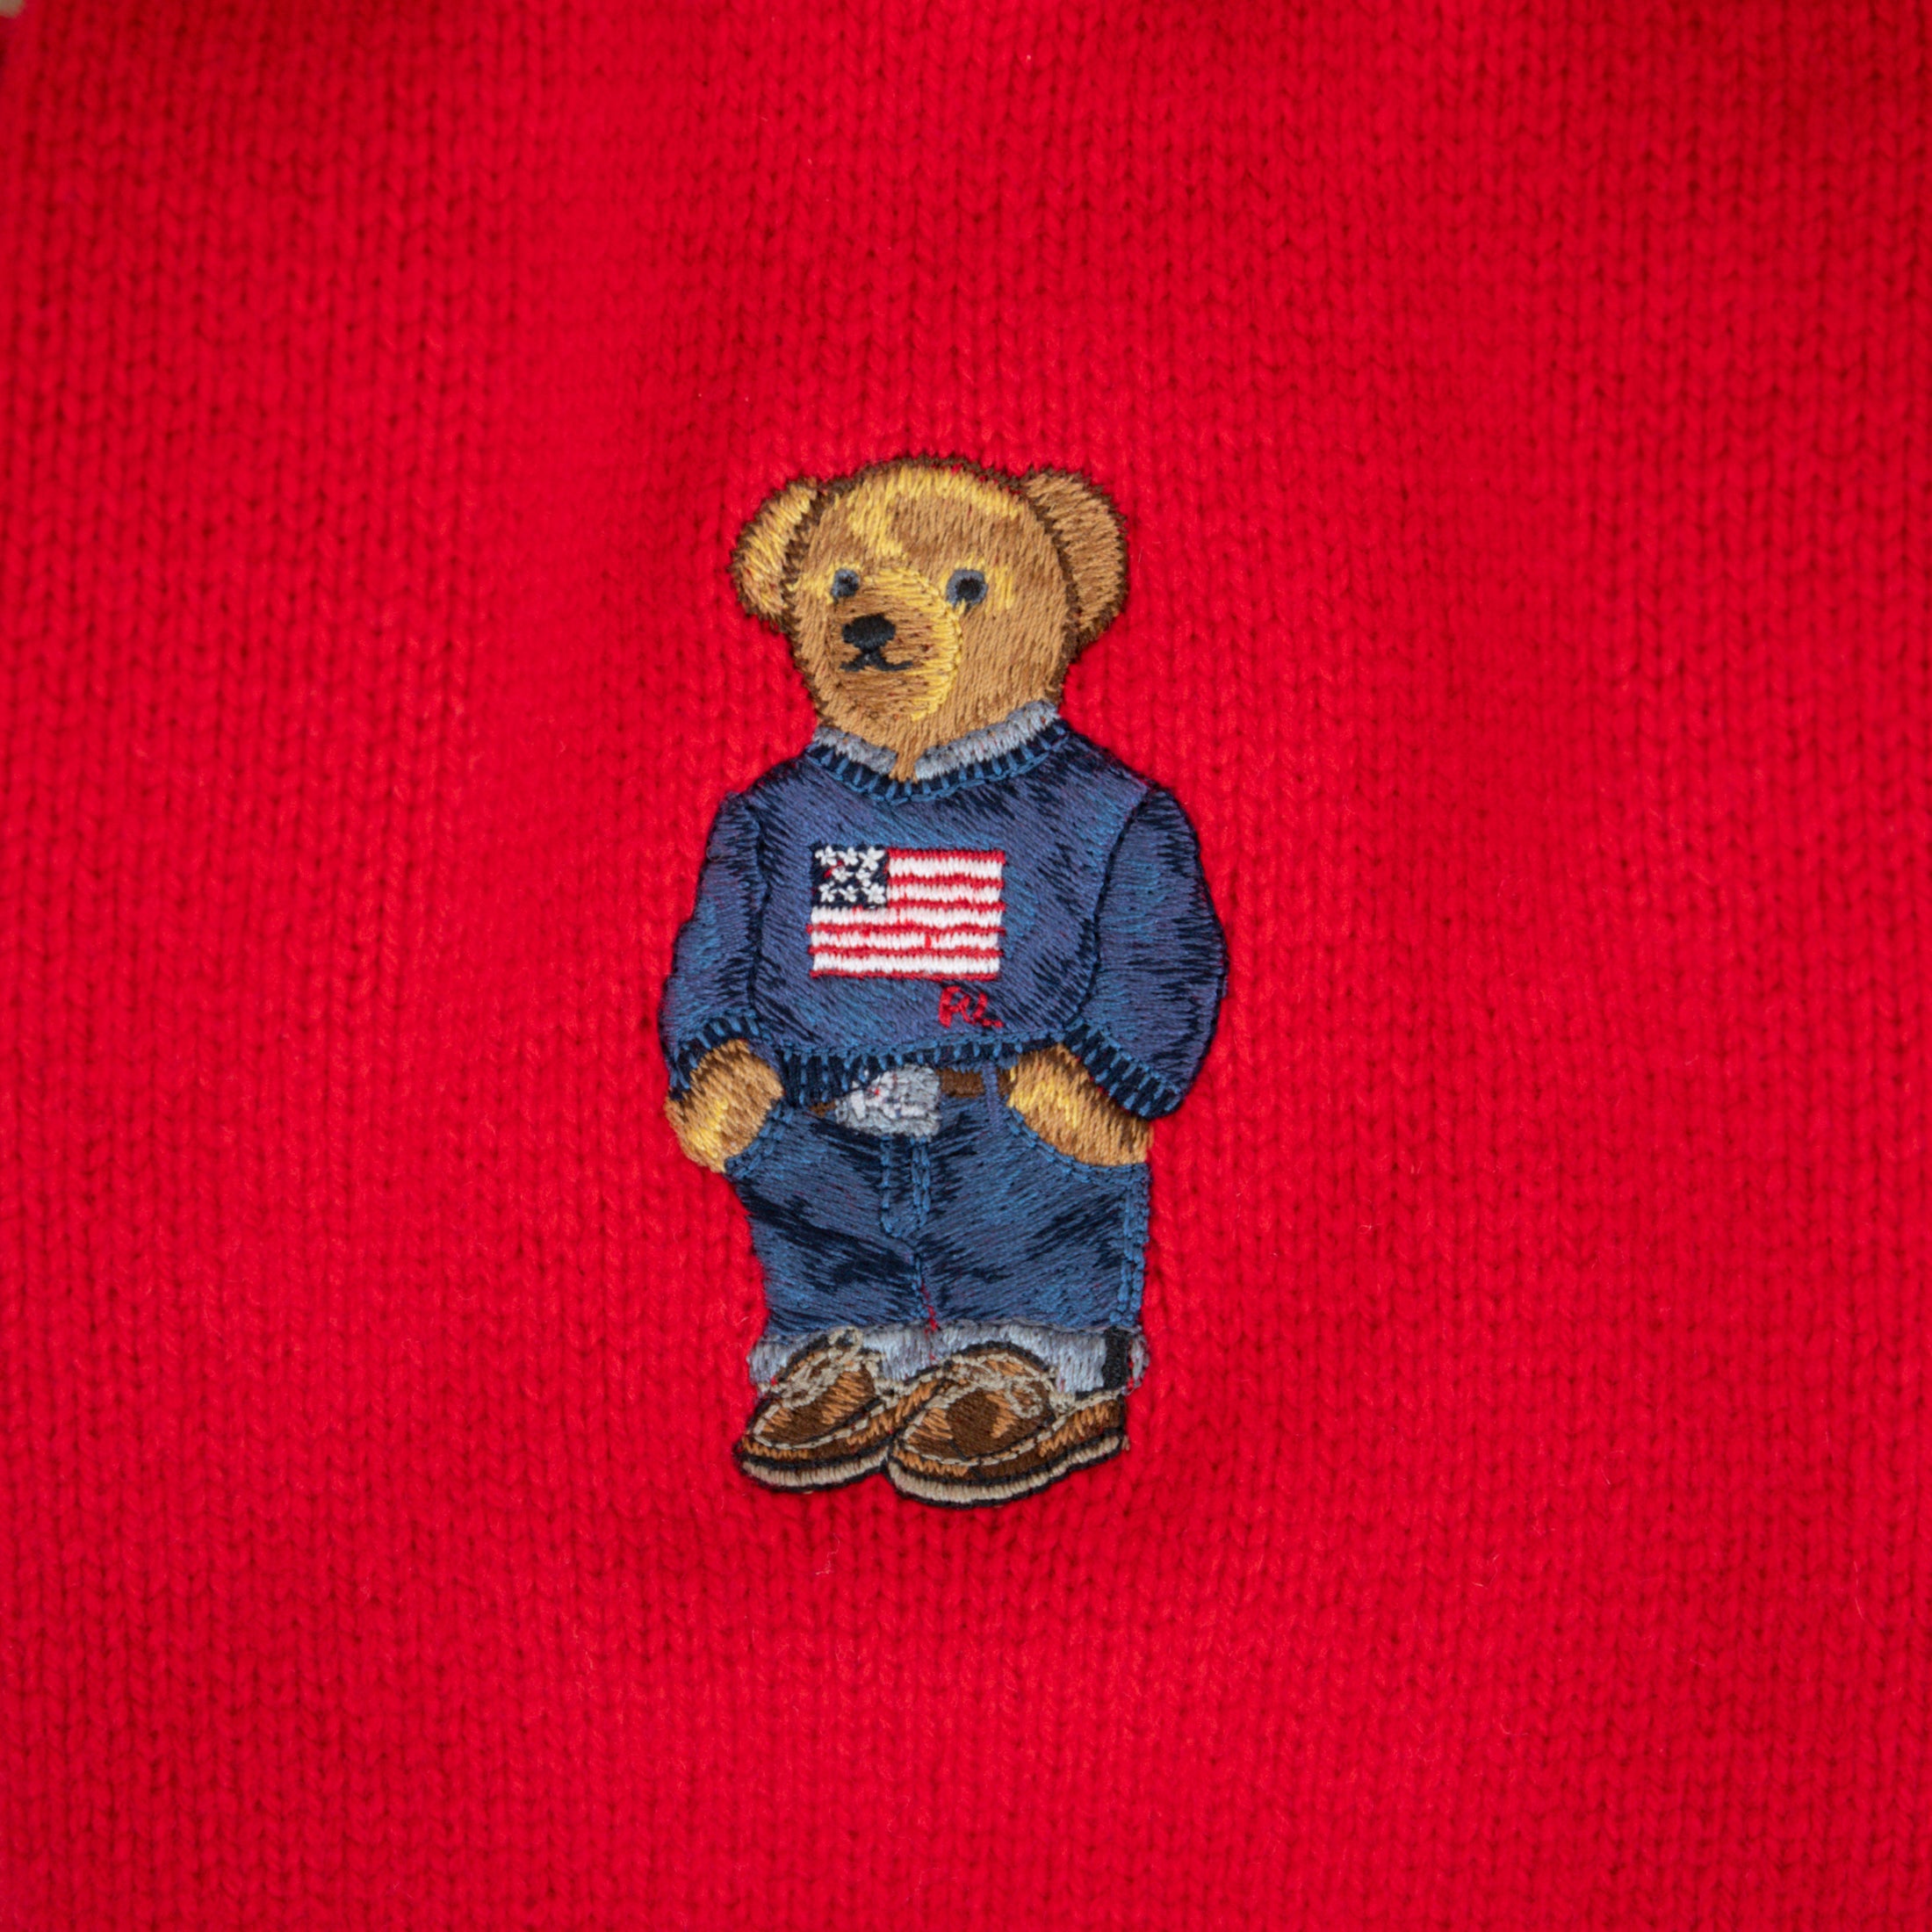 Ralph Lauren Bear Sweater